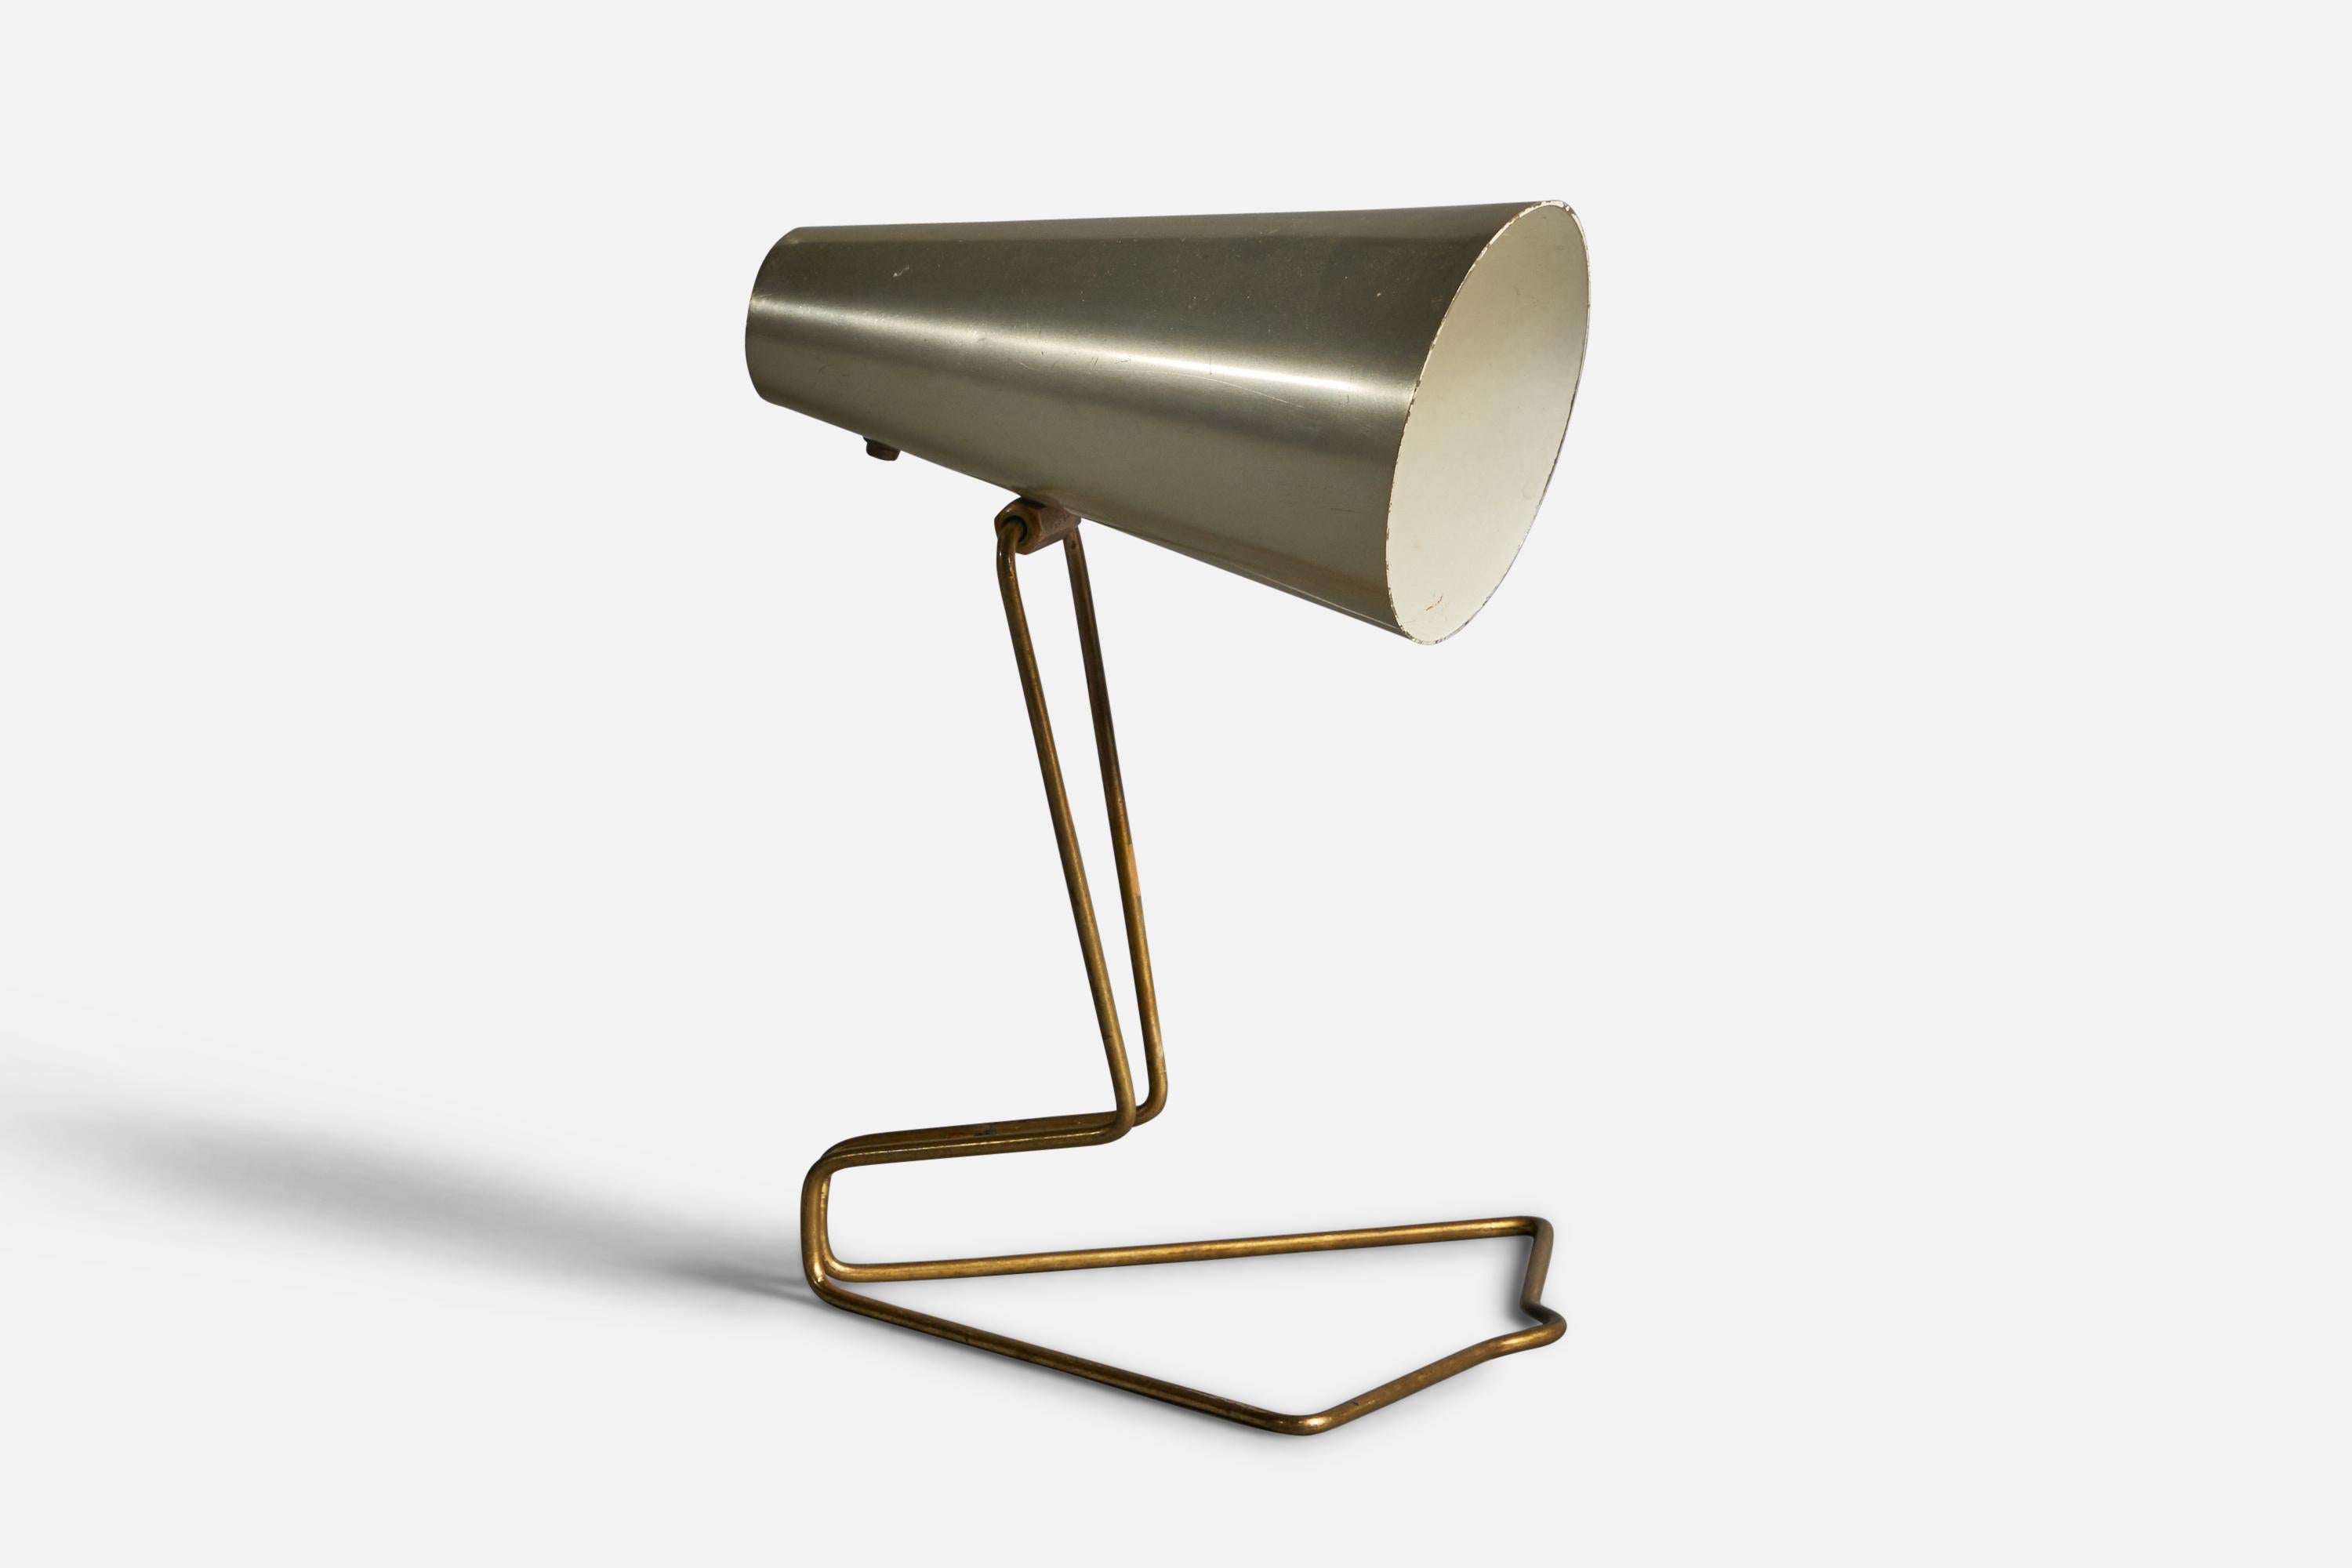 Eine verstellbare Tisch- oder Wandleuchte aus Messing und Metall, entworfen und hergestellt von Idman, Finnland, 1940er Jahre. 

Die Corde wird vom Lampenschirm gespeist.

Gesamtabmessungen (Zoll): 9,5